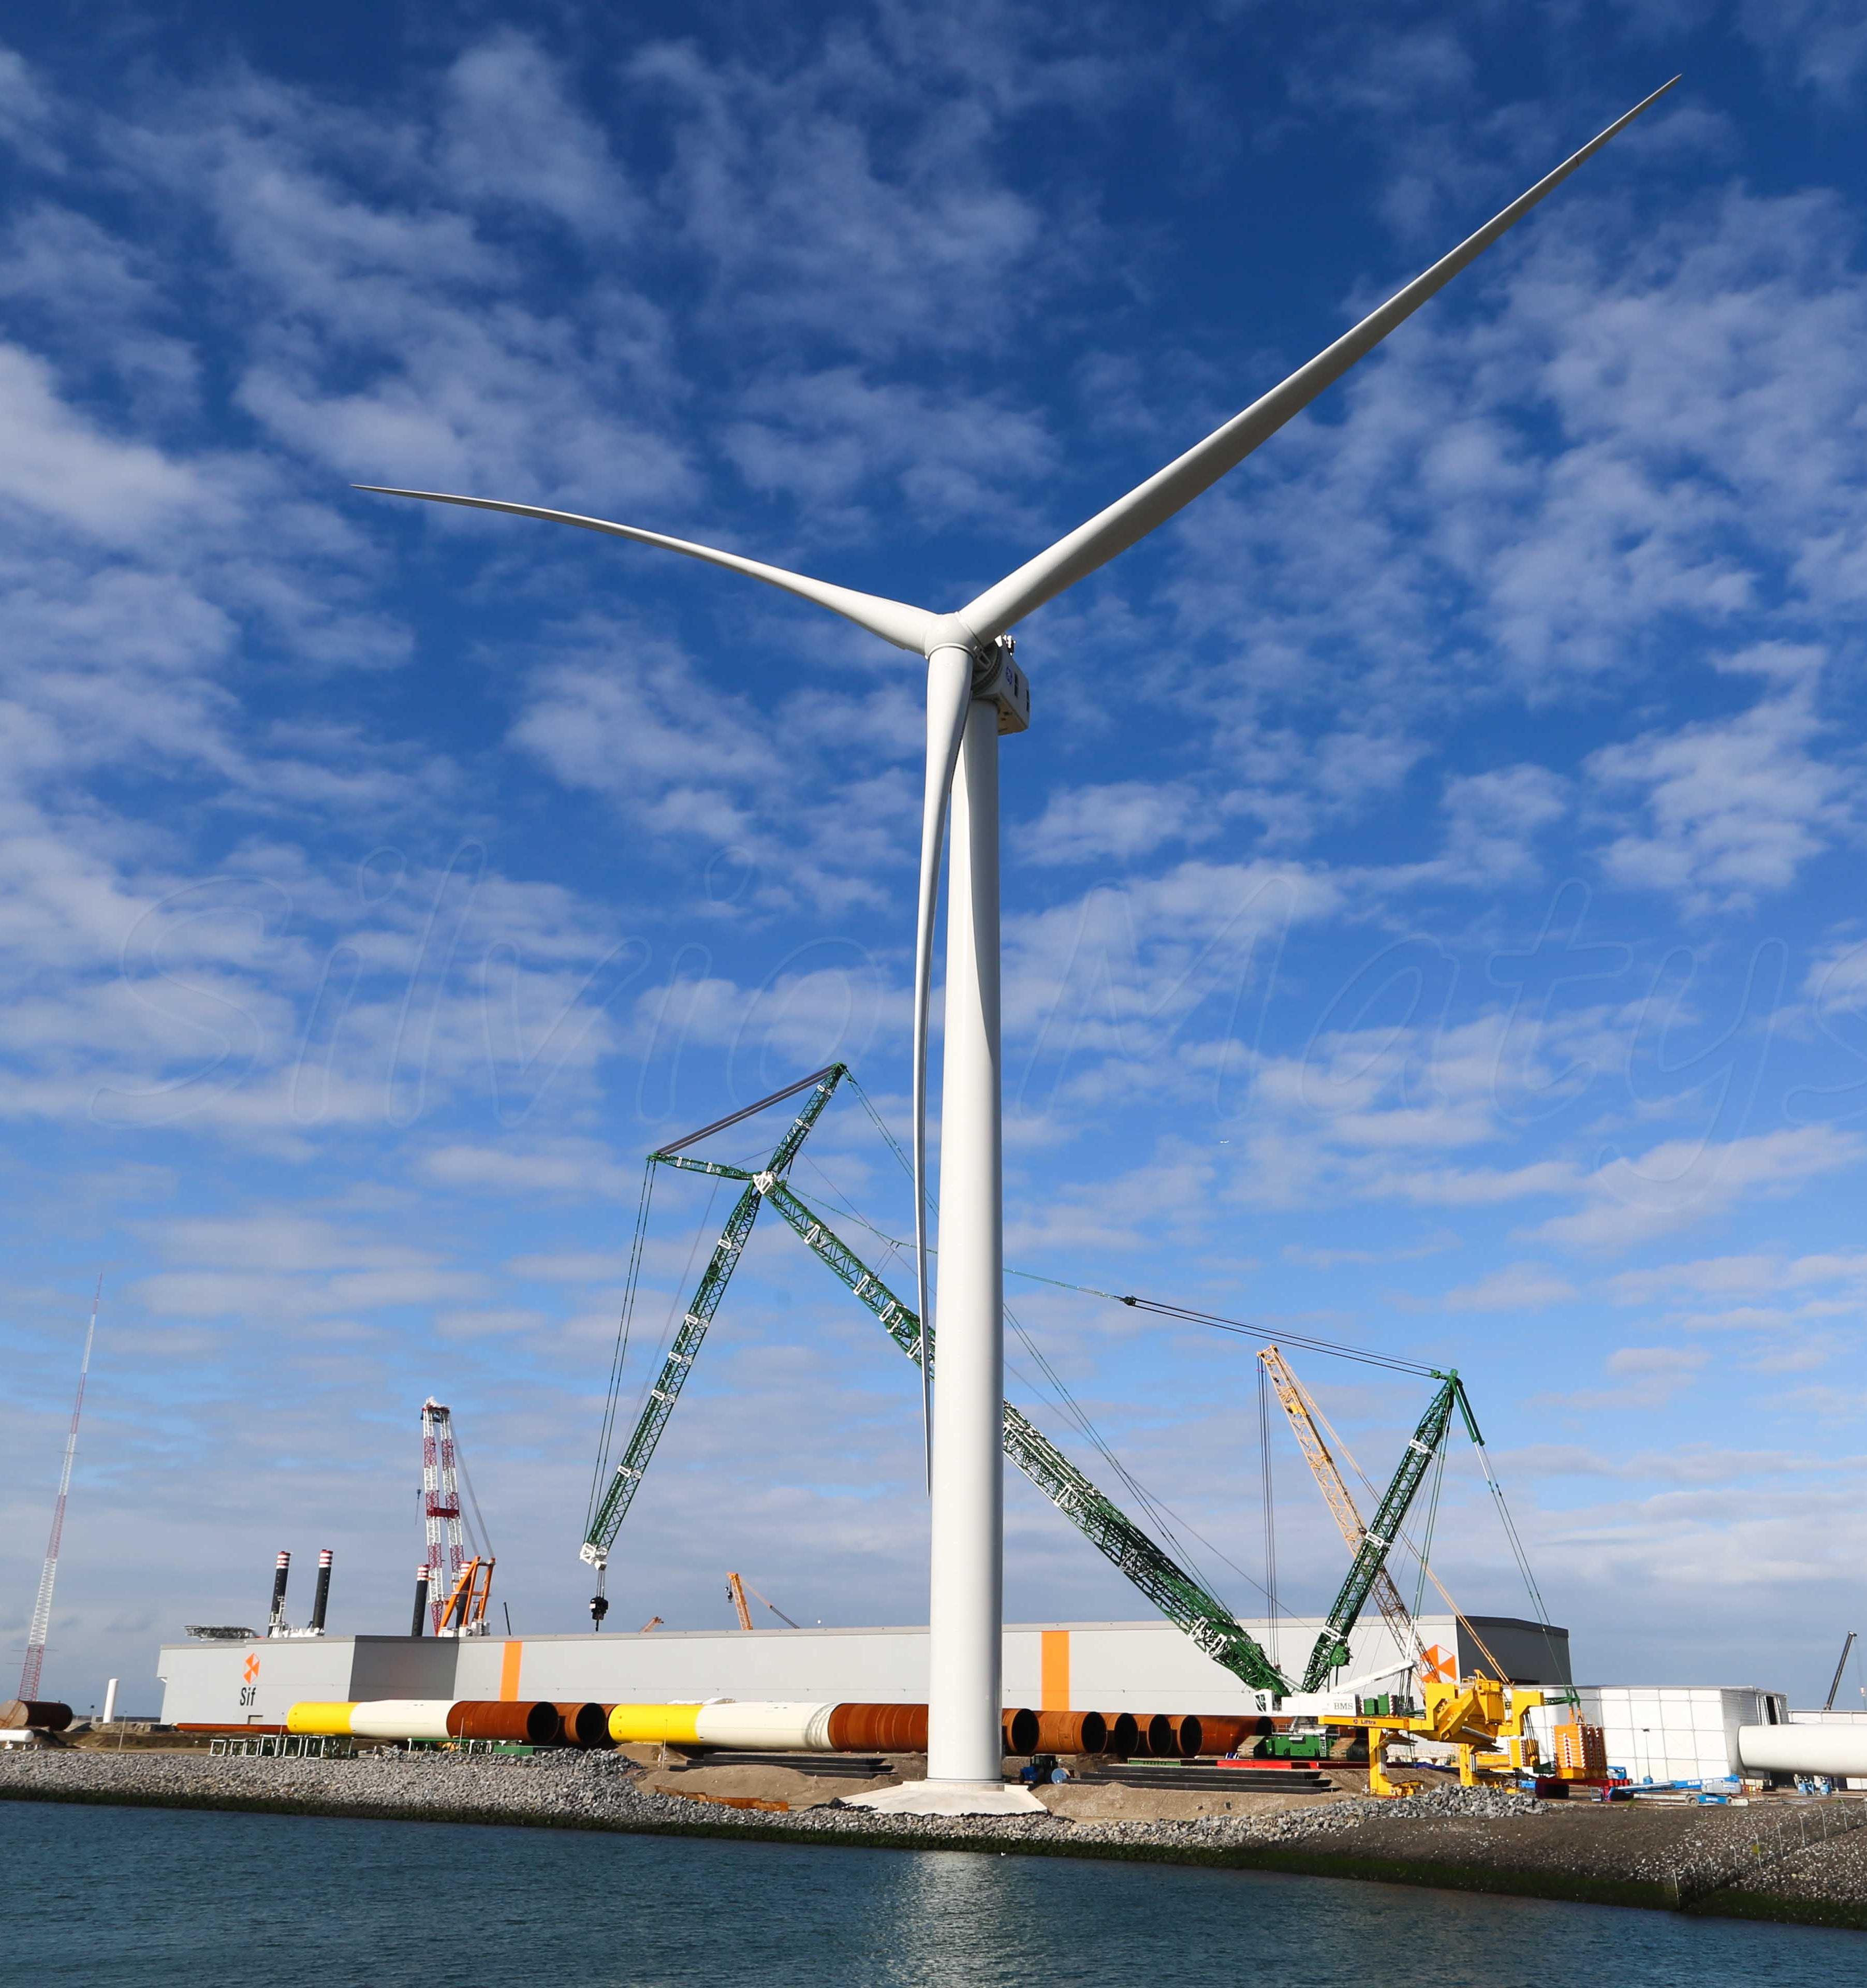 Cамая мощная офшорная ветровая турбина заработала в Нидерландах